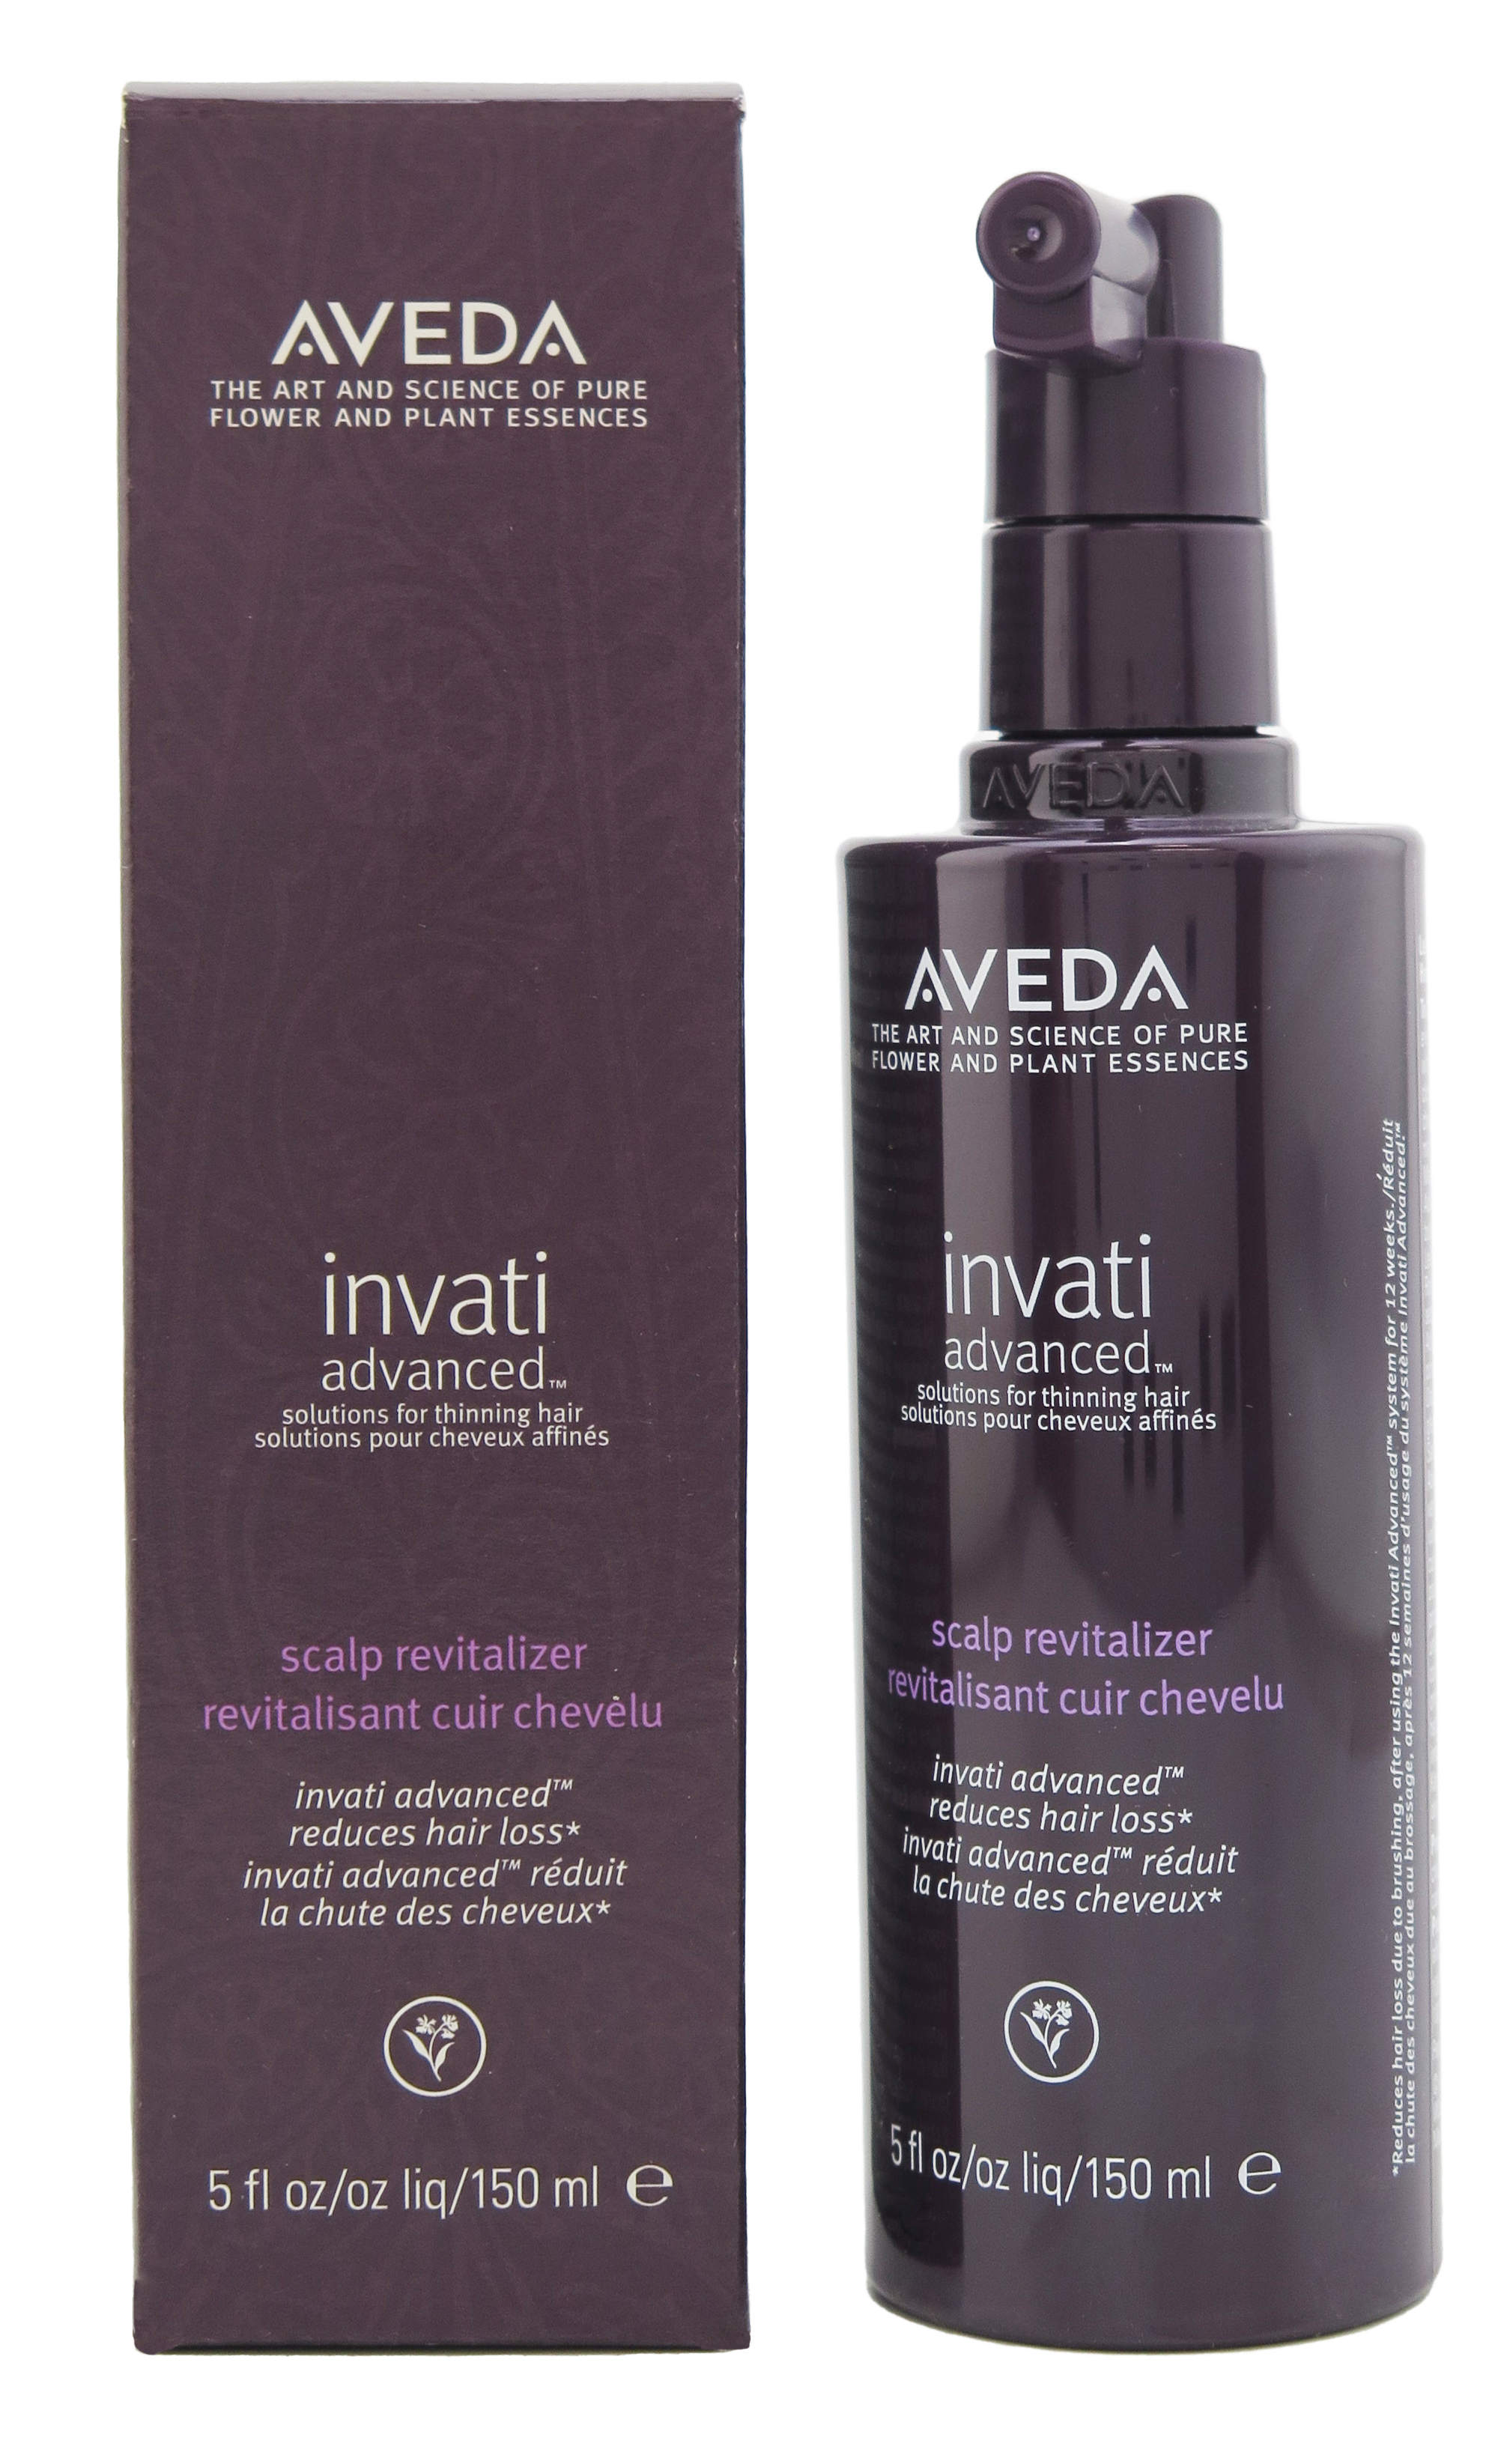 Aveda Invati Advanced Intensive Hair & Scalp Masque 5 Fl oz